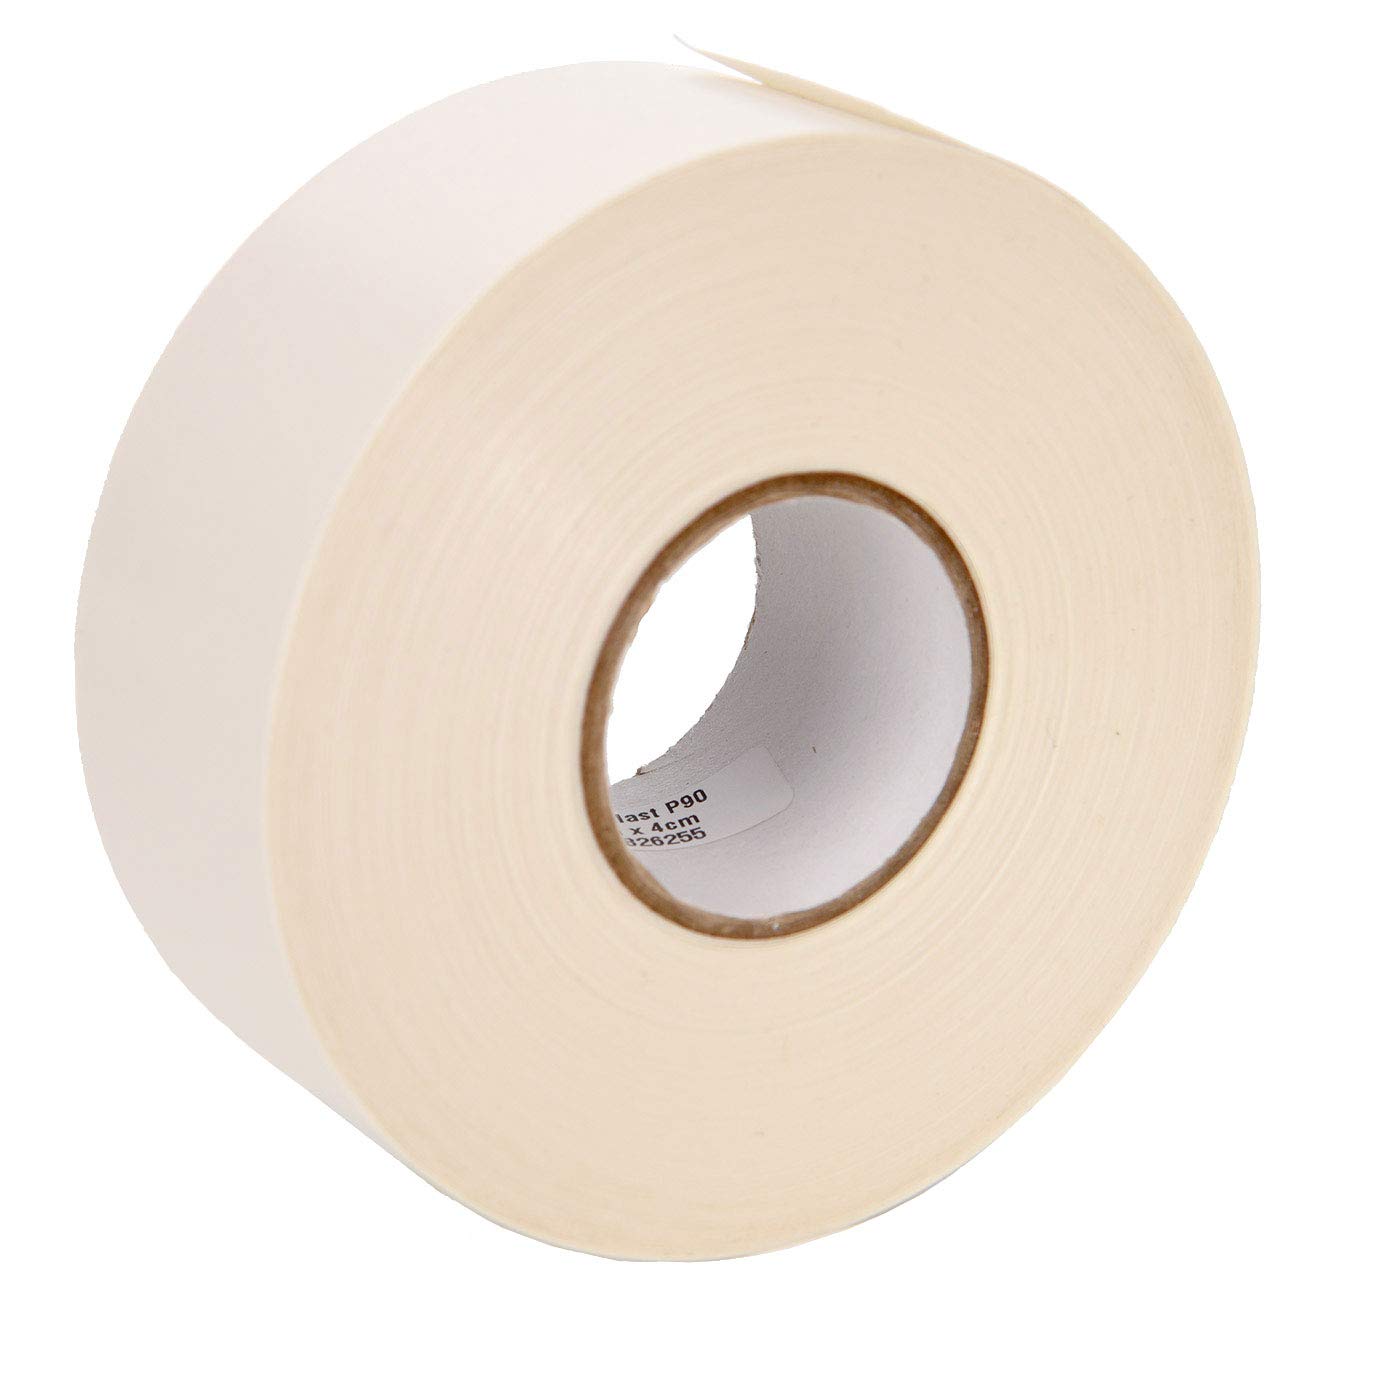 Neschen Filmoplast P90 Paper Hinging Tape by Neschen - 3